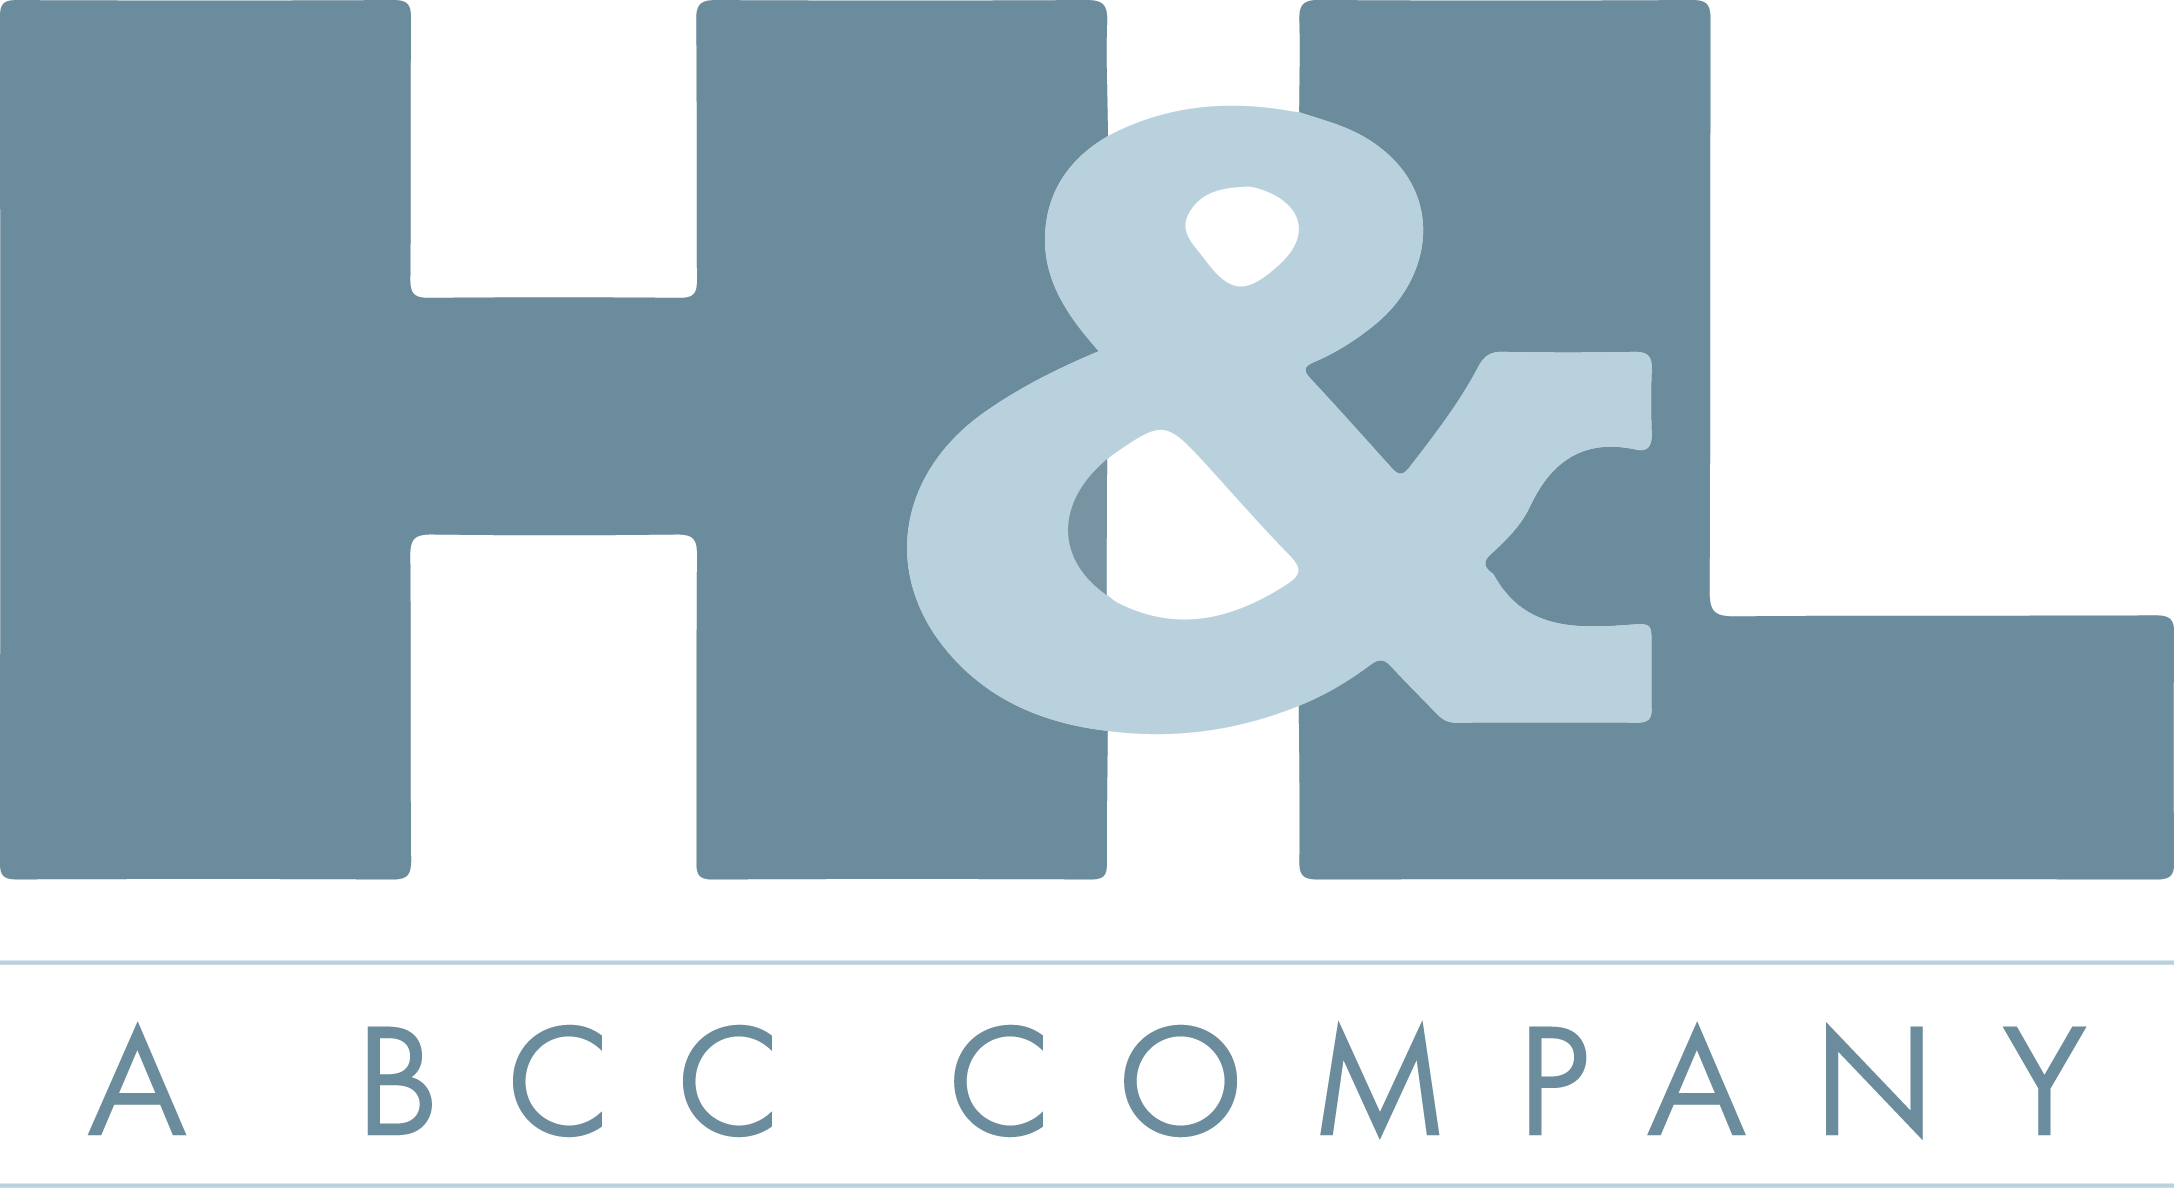 H&amp;L - A BCC Company (blue)